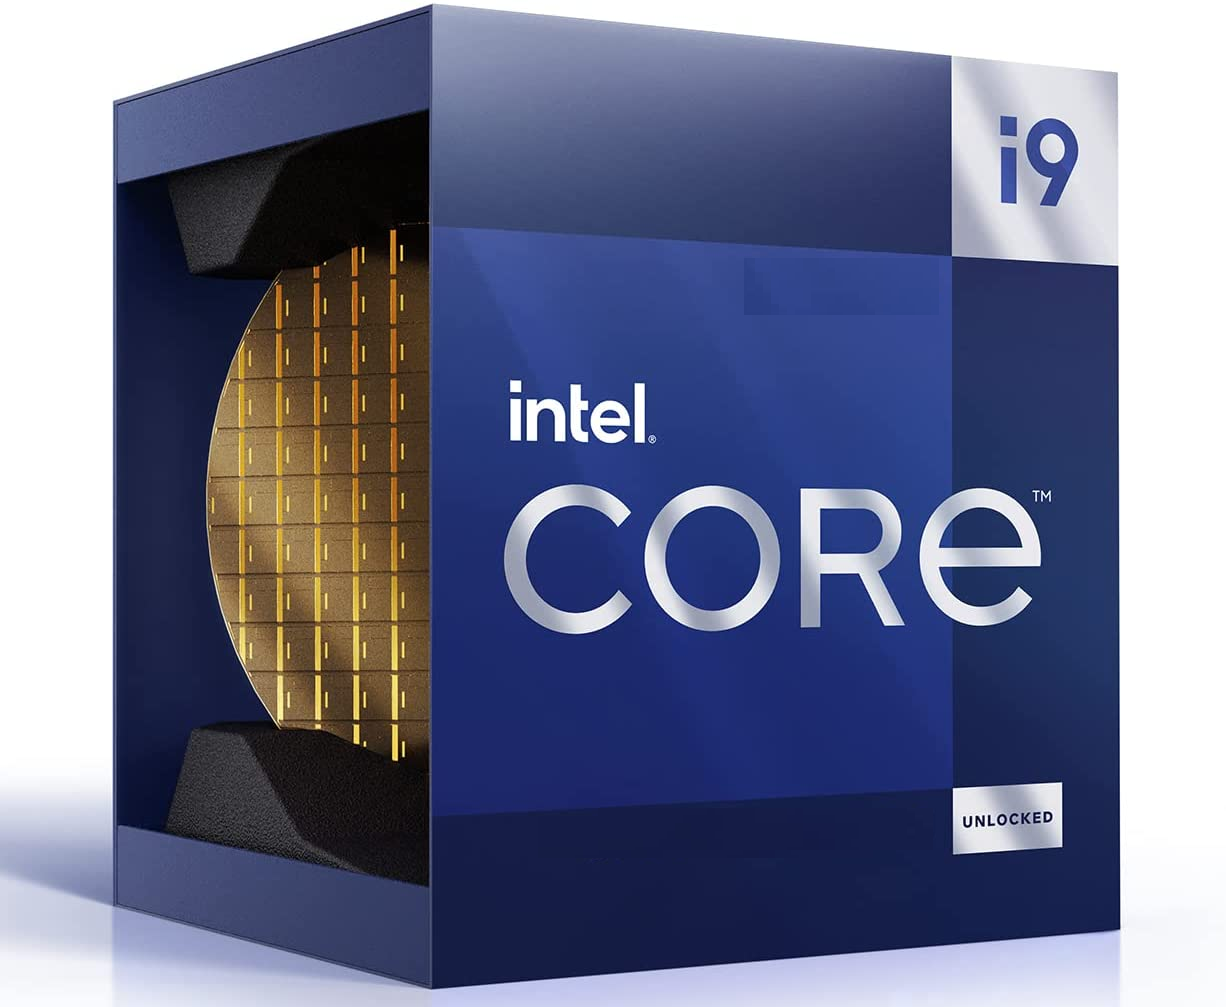 Intel Core i9-13900K drops below US$500 on Amazon - NotebookCheck